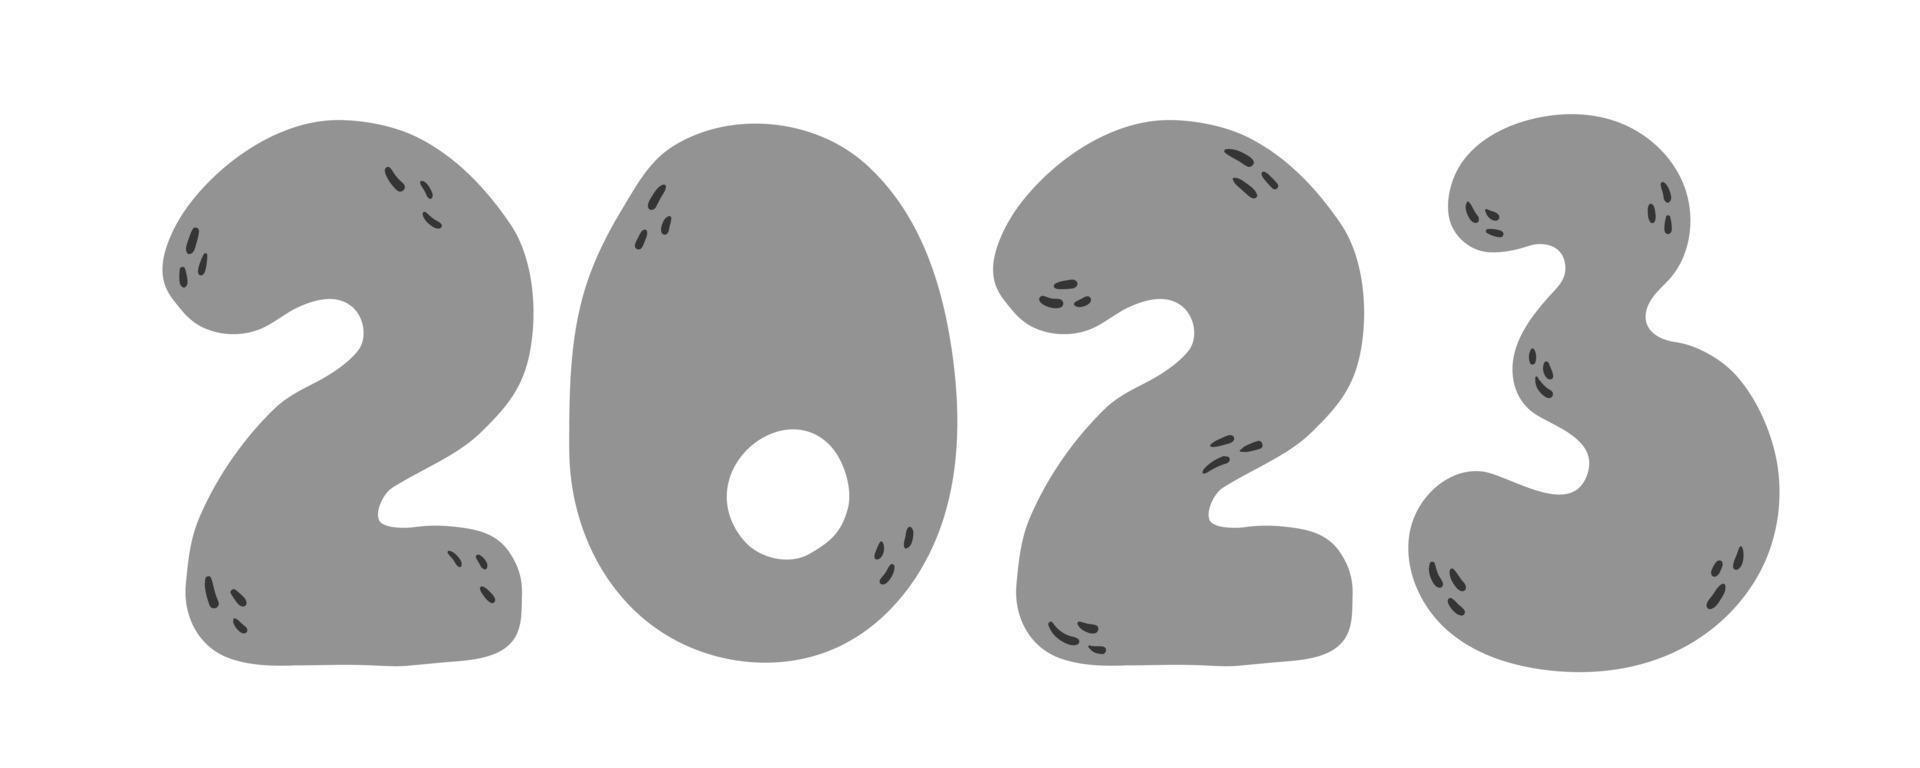 nuovo anno grigio numero 2023 nel cartone animato scarabocchio mano disegnato stile. vettore Natale silhouette